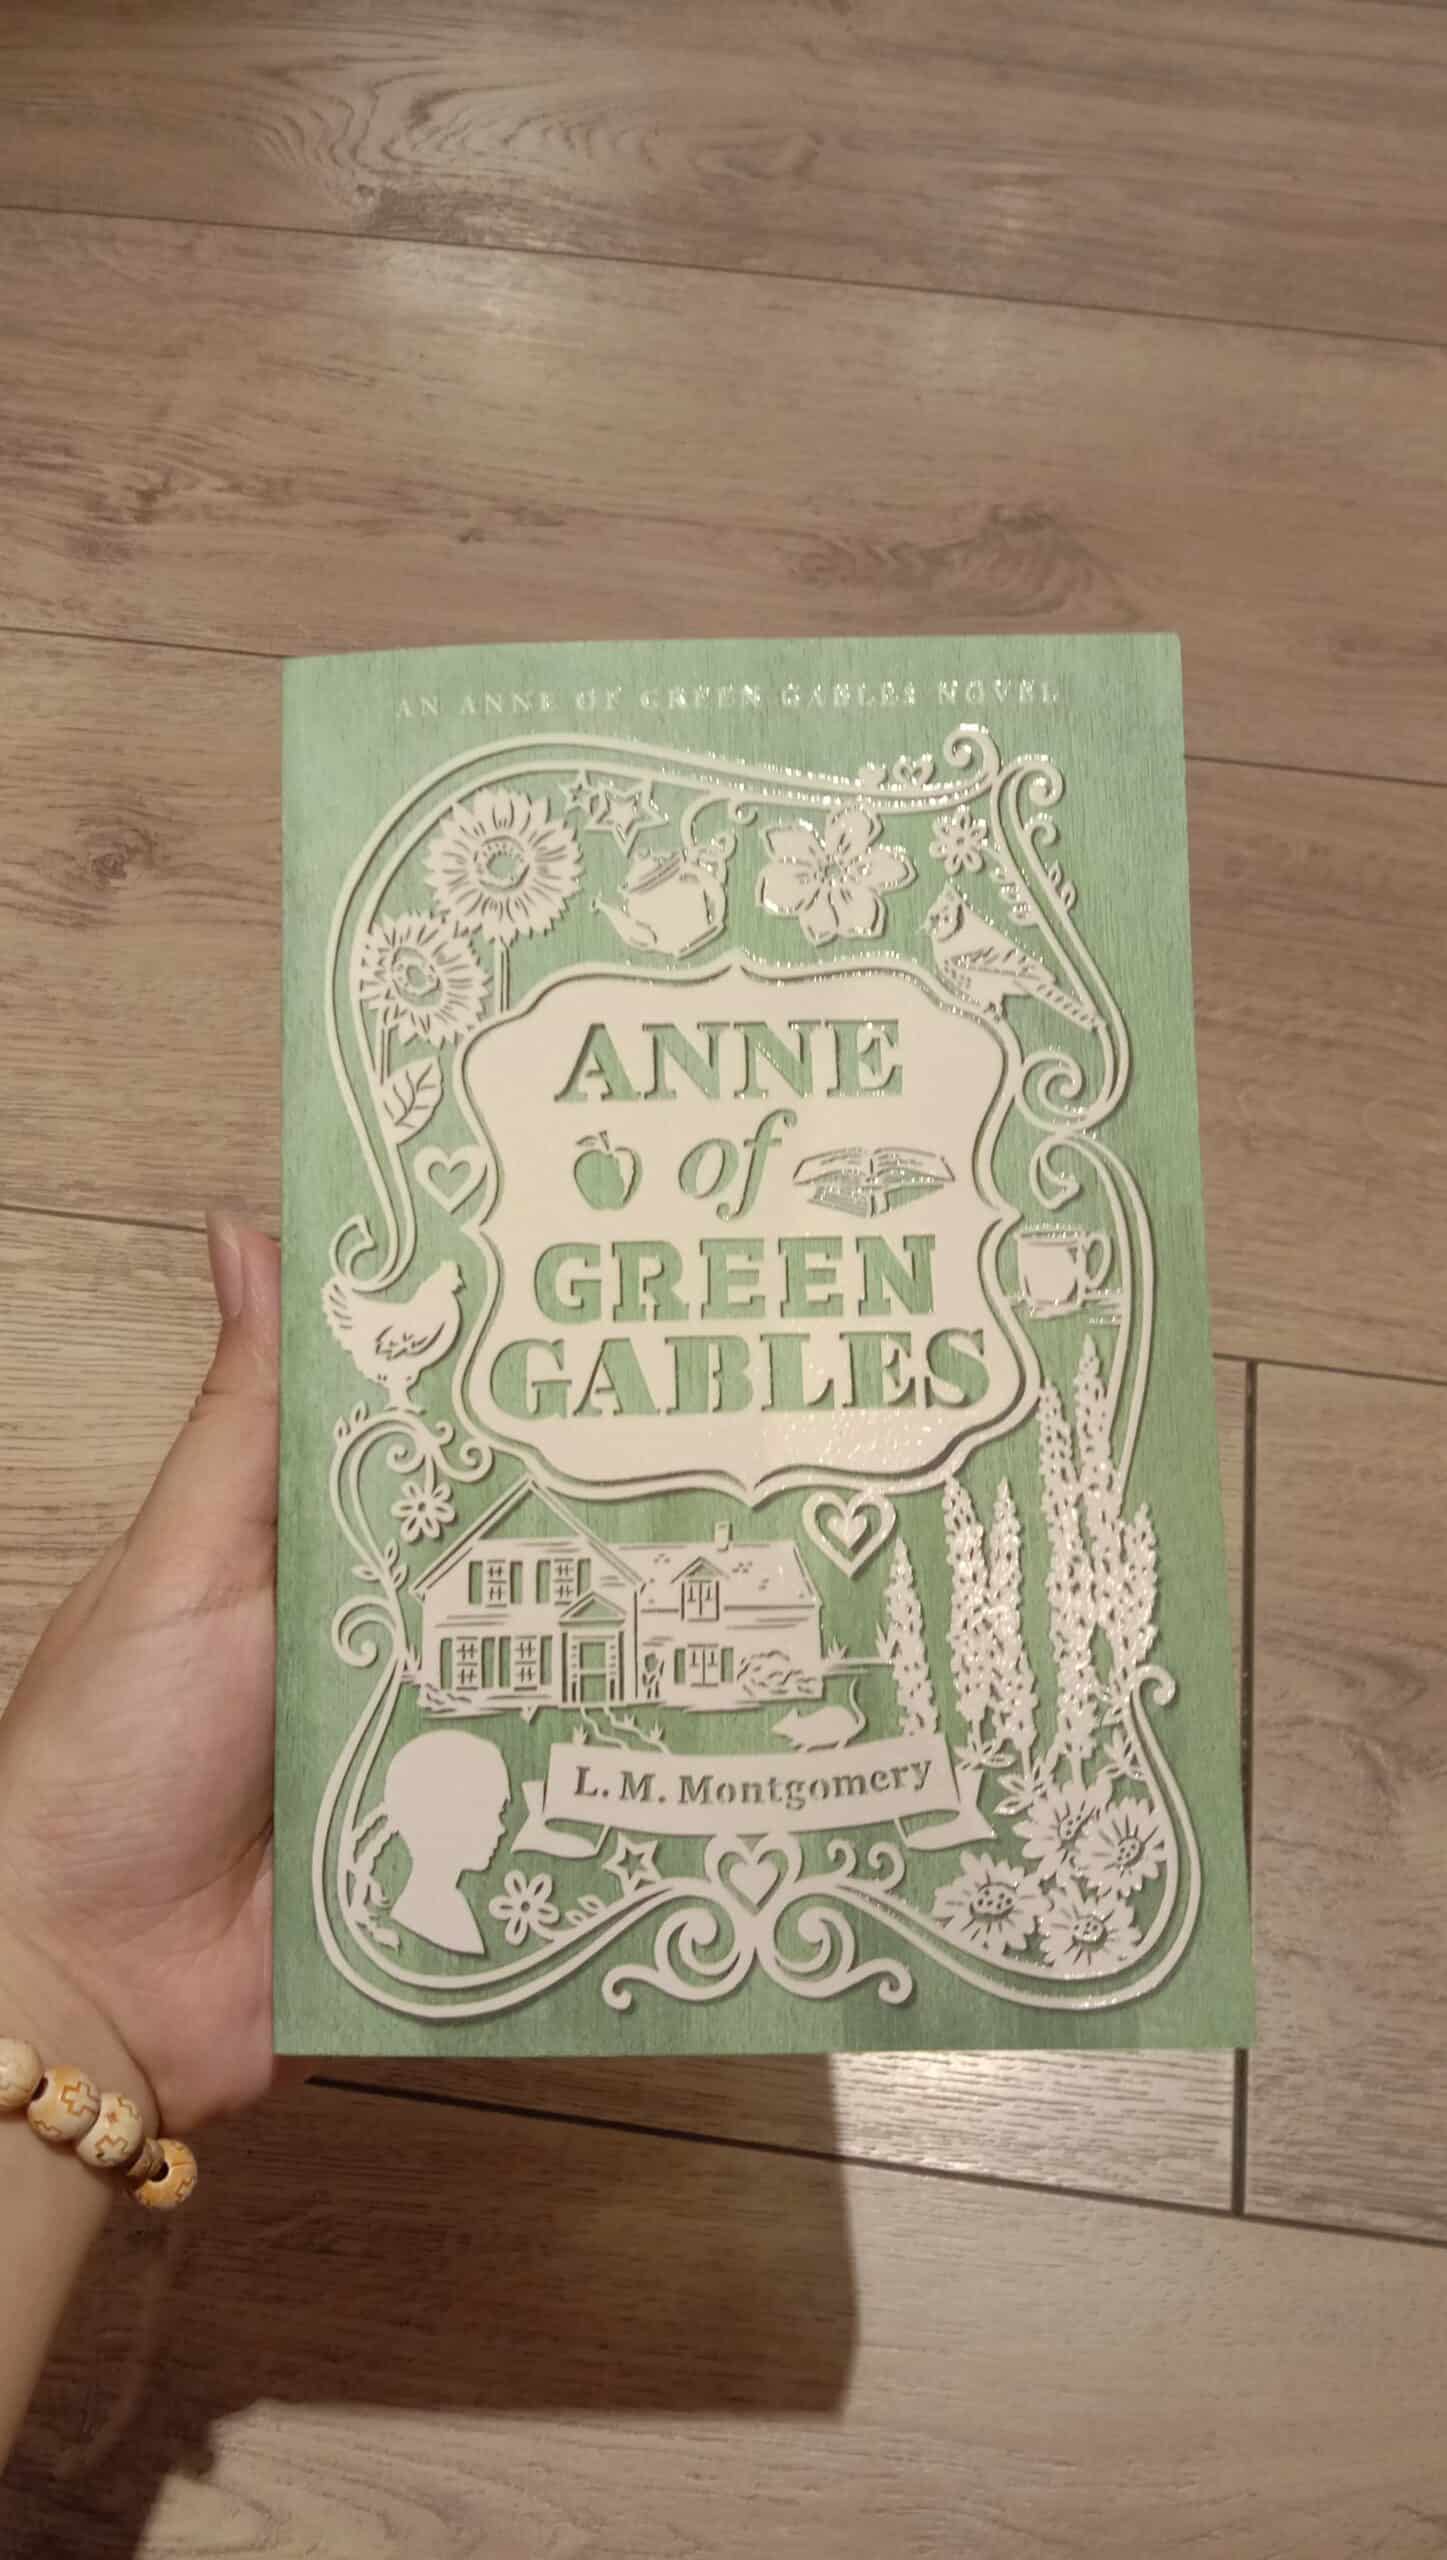 The front cover of the novel Anne of Grenn Gables